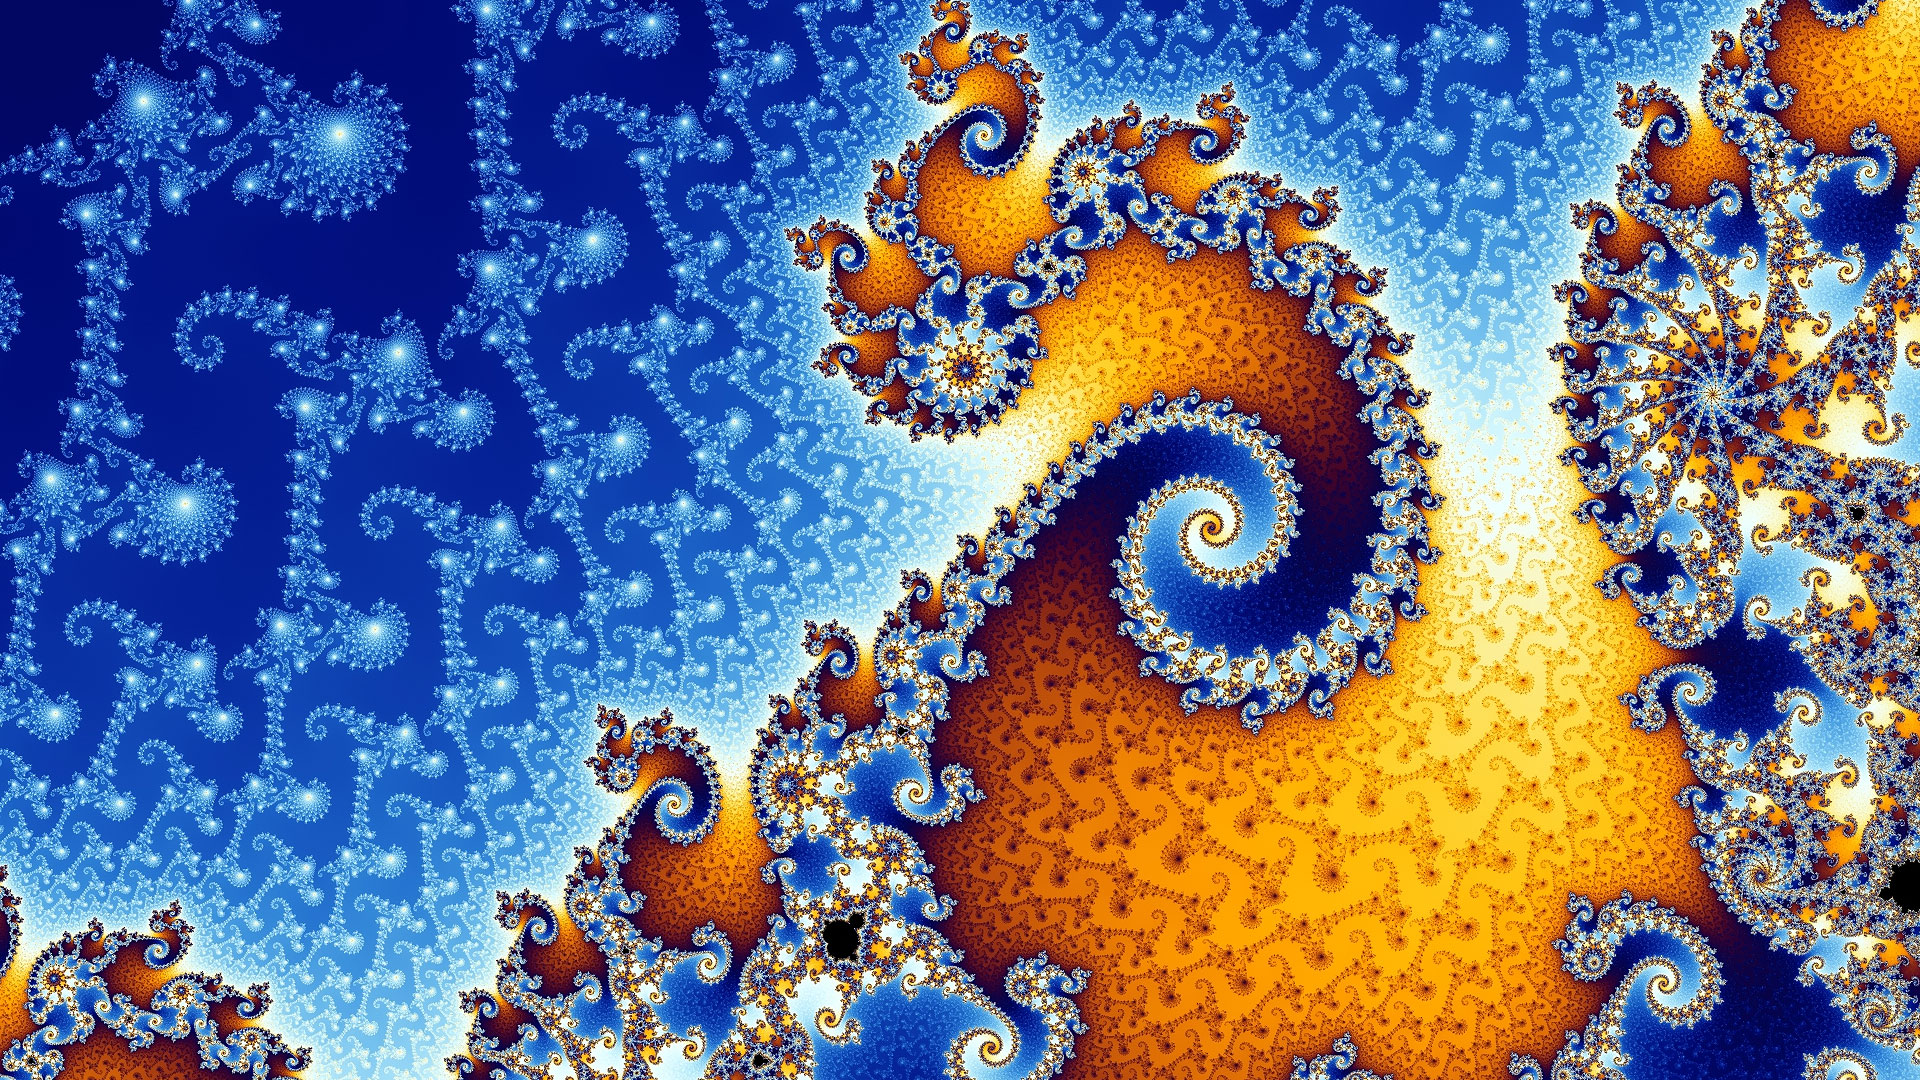 Les somptueuses spirales de Mandelbrot. L’ensemble de Mandelbrot est une collection de points contenant des aires, des courbes lisses, des filaments, etc. Cette fractale forme des figures d’une beauté fascinante. L’image en montre un détail : les tons bleus et orange dominent et forment des spirales ressemblant à une coquille d’escargot. © Futura-Sciences